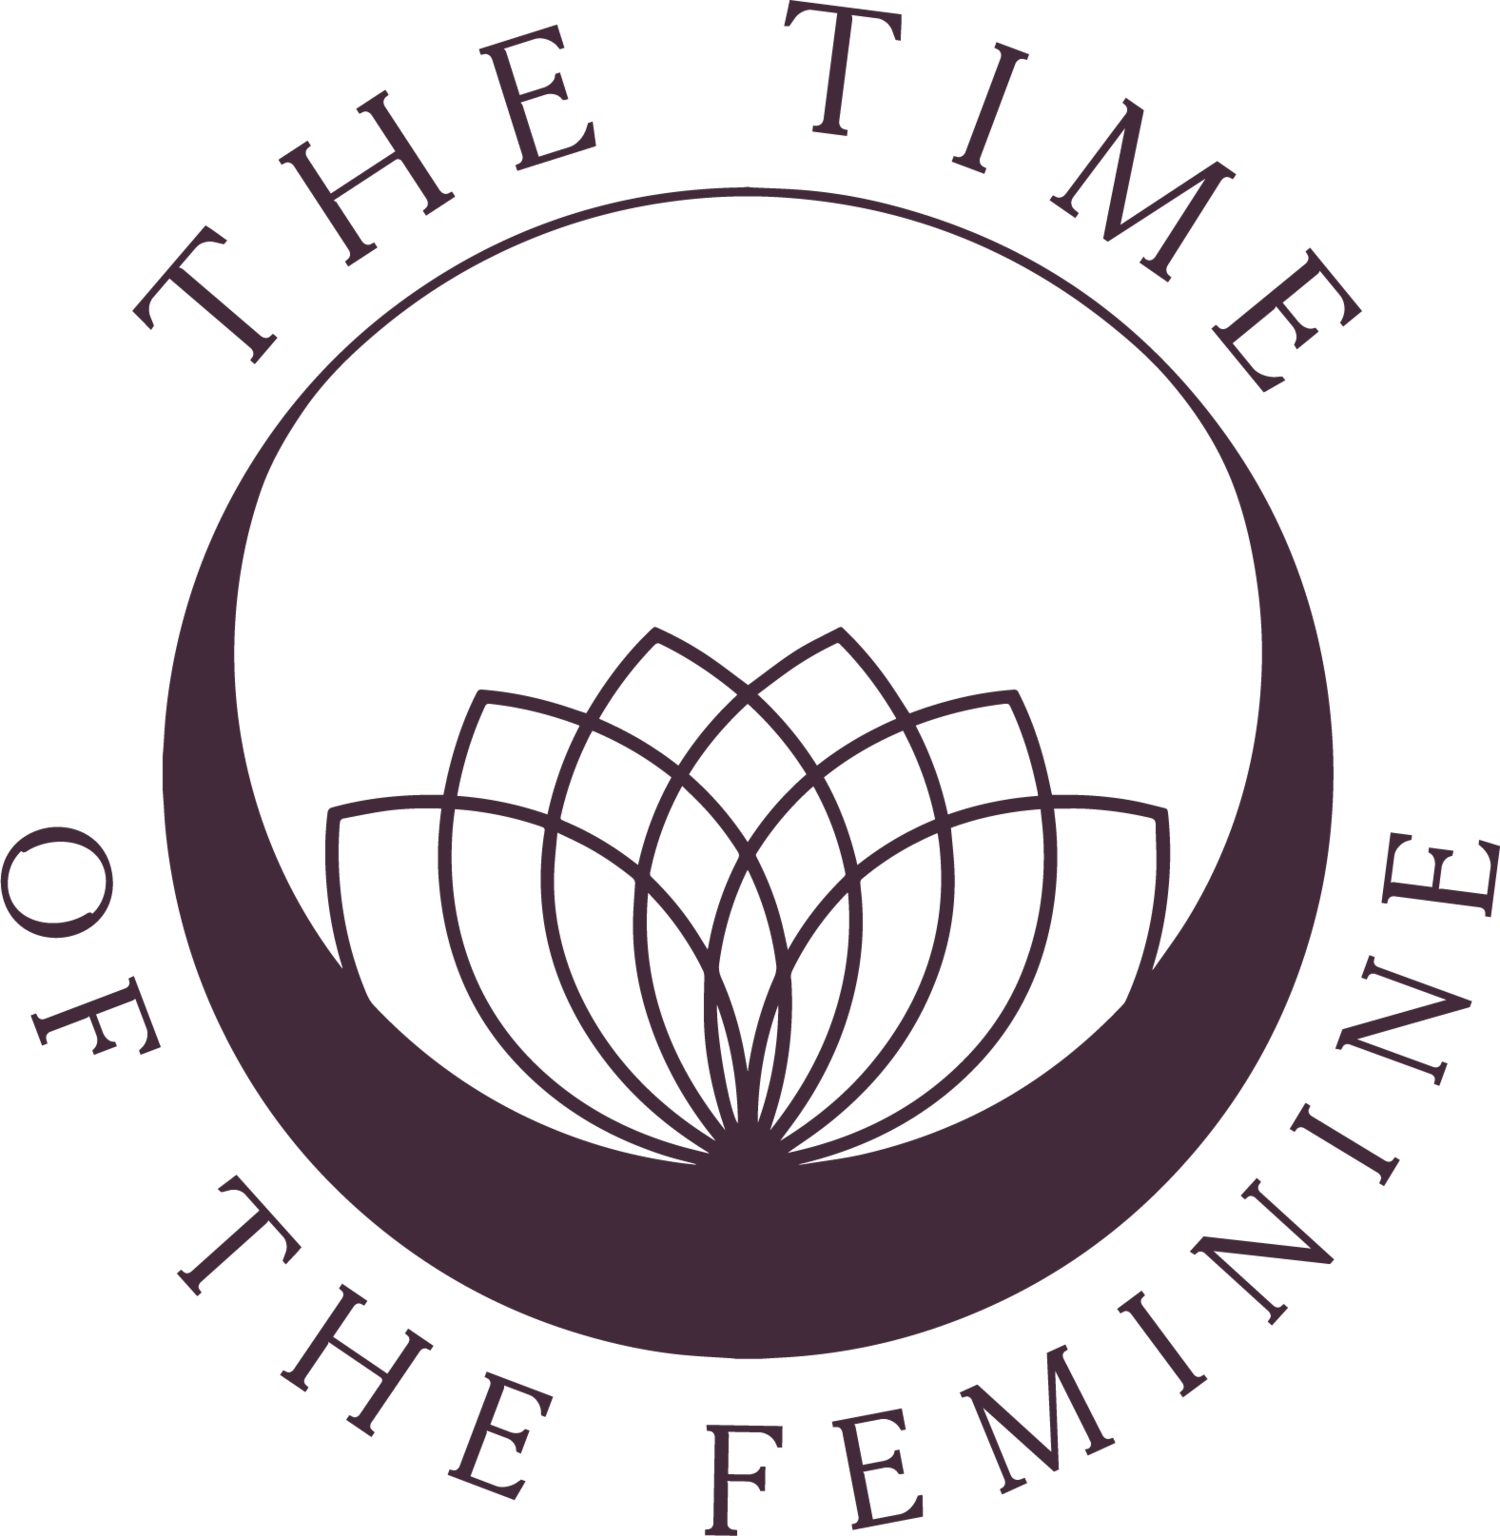 TIME OF THE FEMININE